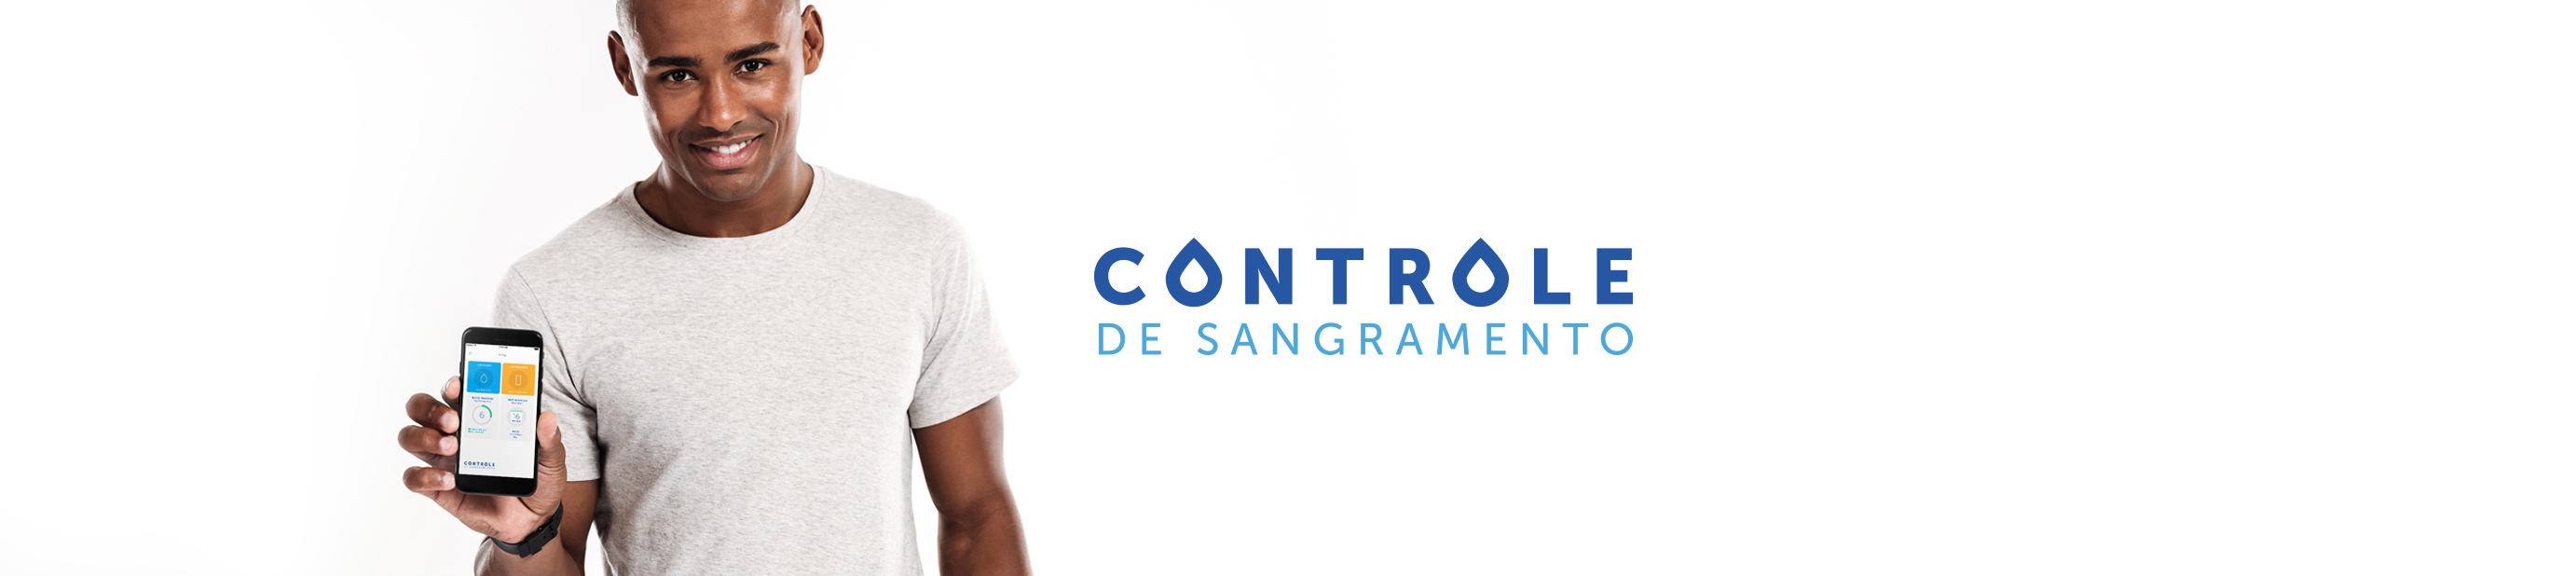 Welcome to Controle de Sangramento